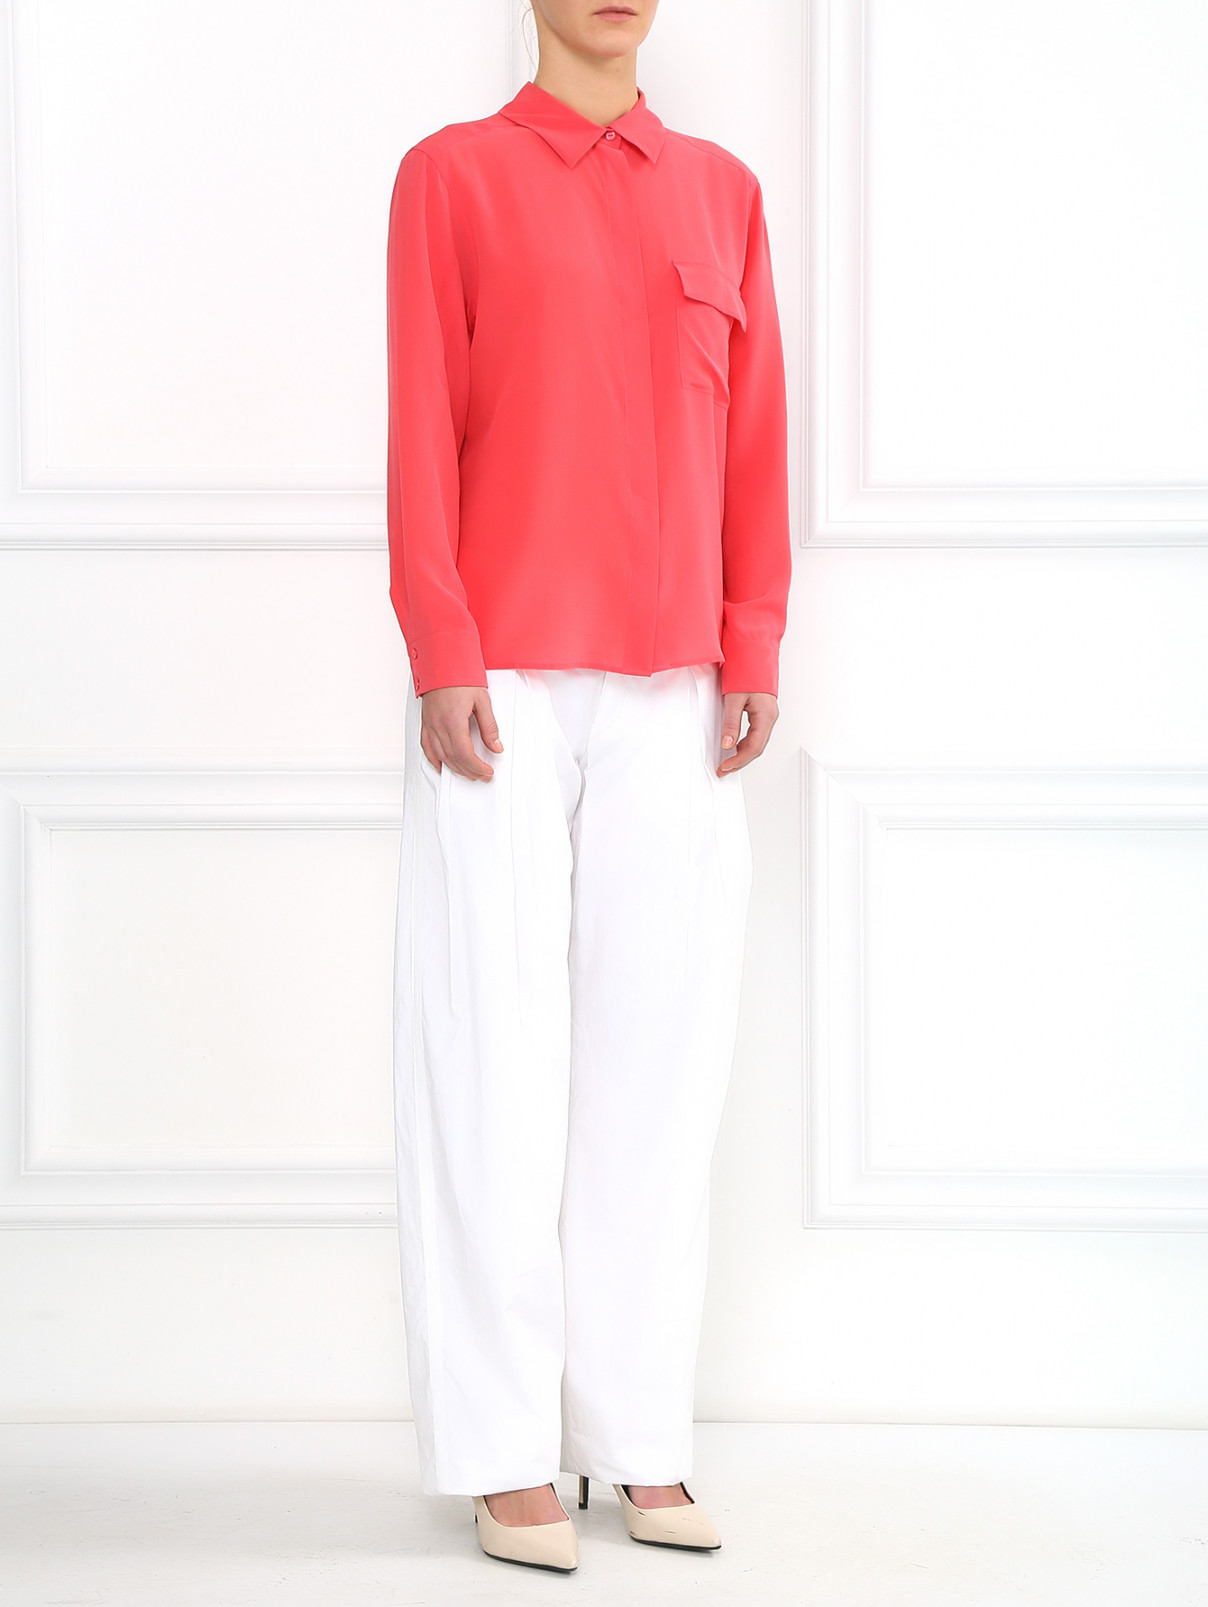 Широкие брюки из хлопка Max Mara  –  Модель Общий вид  – Цвет:  Белый